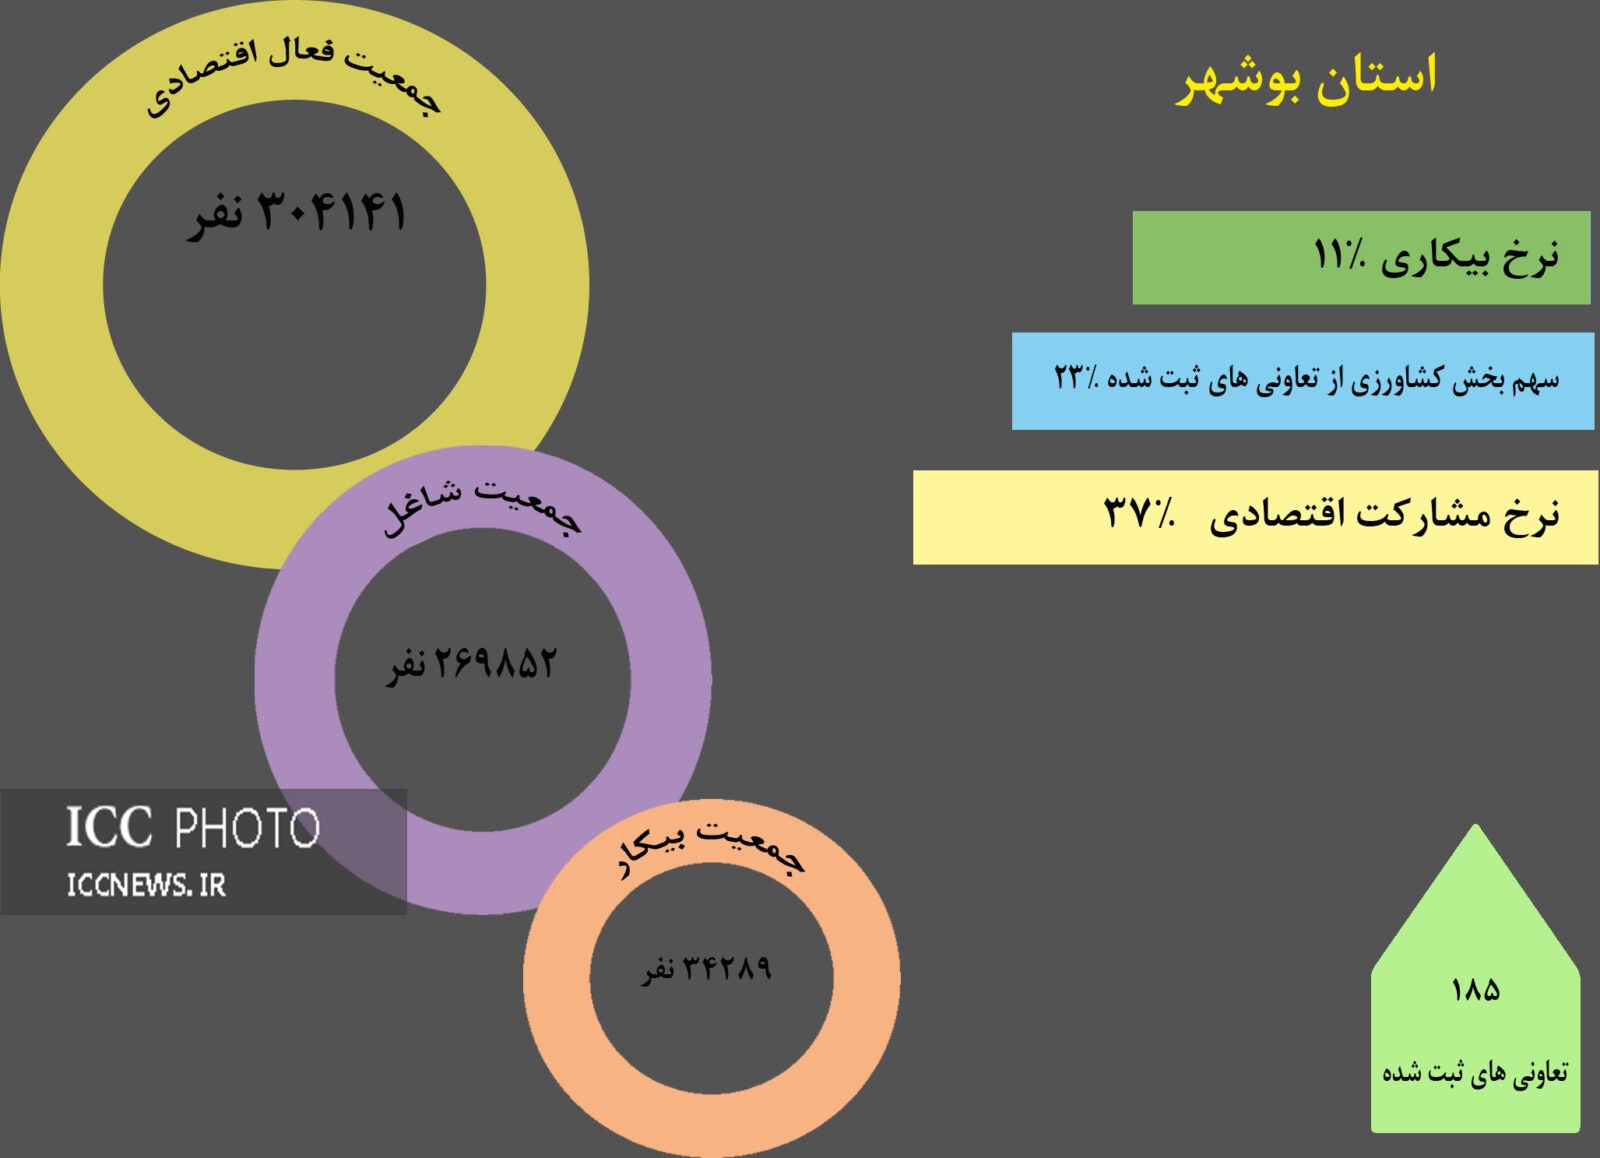 آمار اقتصادی بخش تعاون در بوشهر منتشر شد/ ثبت 185 تعاونی